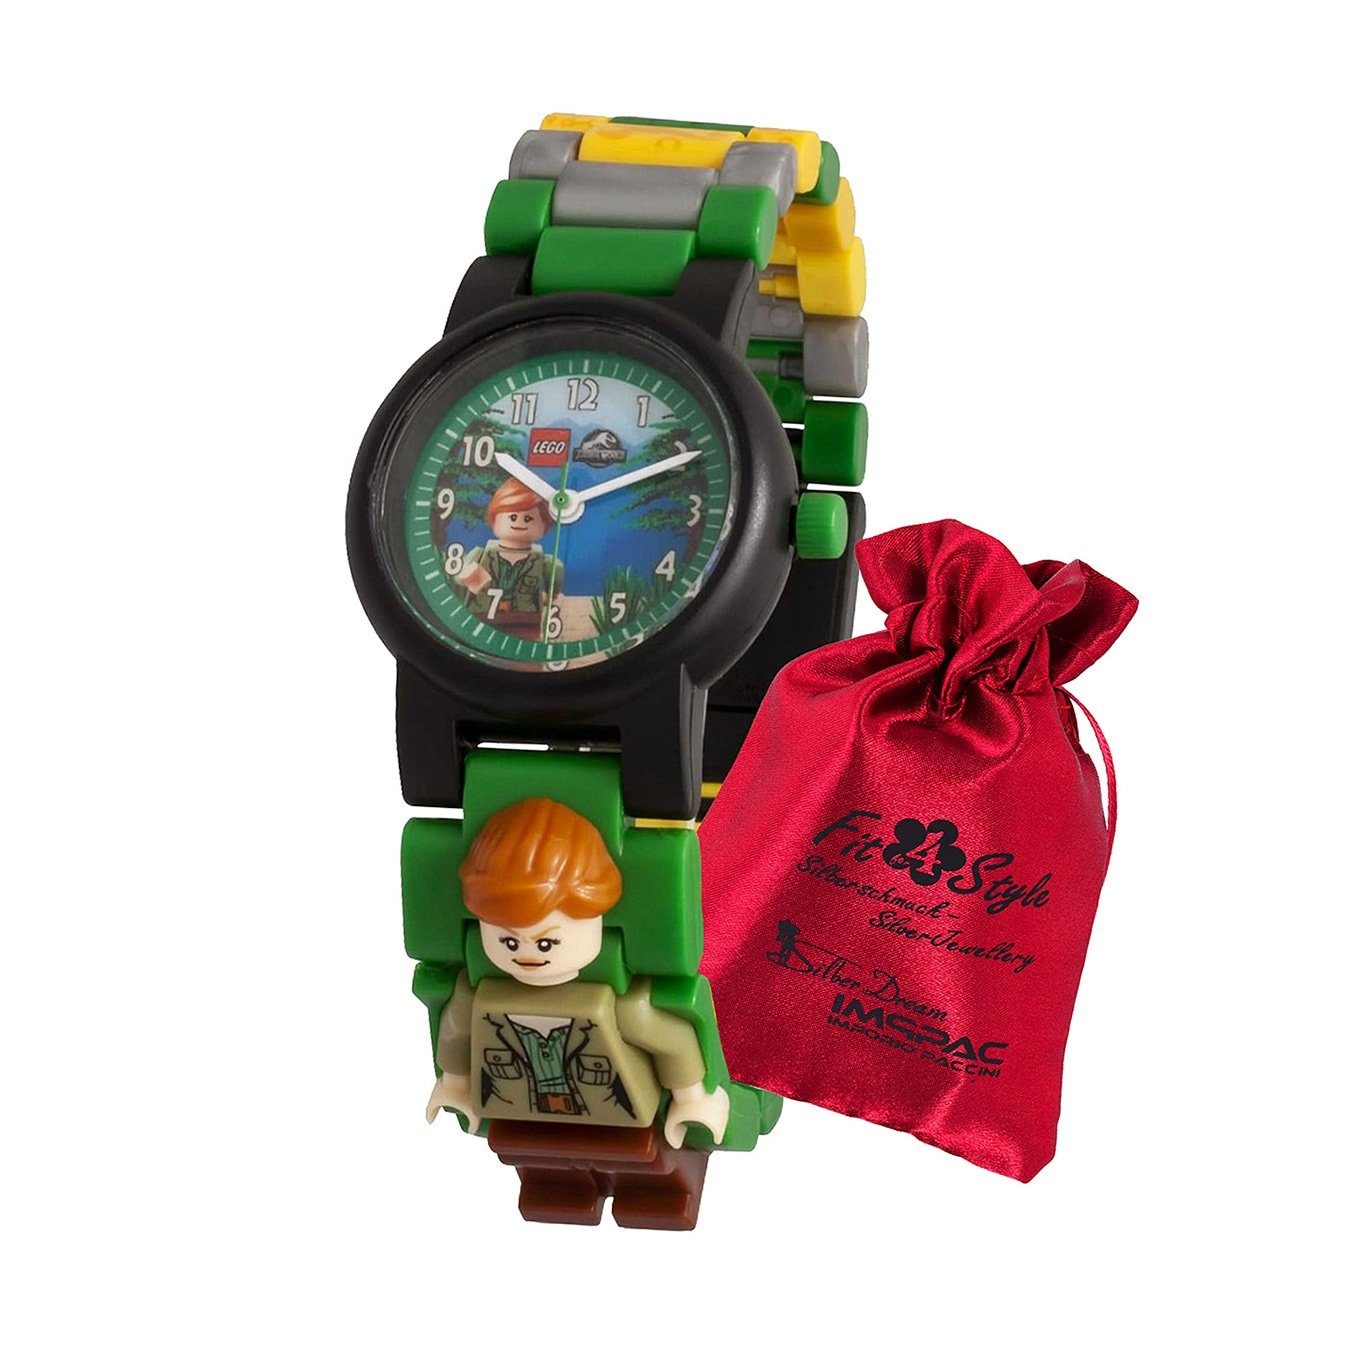 grau (ca. Claire World LEGO® Uhr, Kunststoffarmband grün, klein rund, Jurassic Quarzuhr Kinderuhr 28mm) gelb, Kinder LEGO